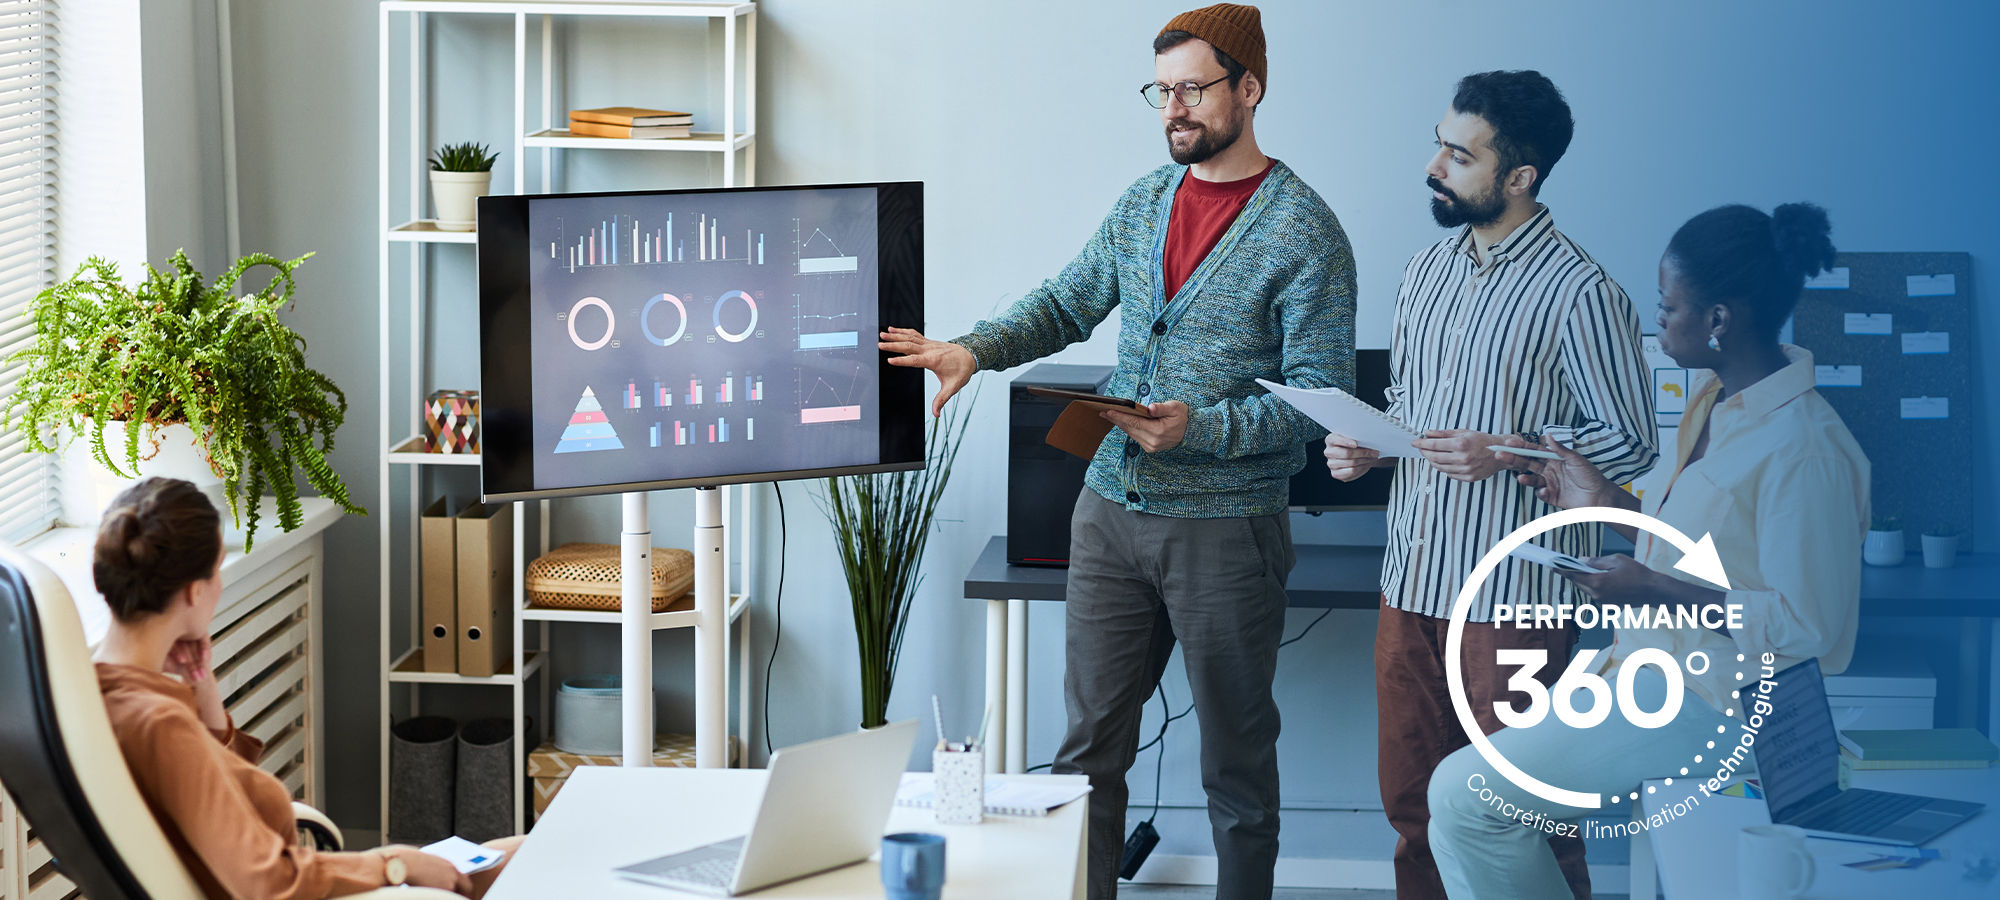 Trois personnes à côté d'une écran présentent des graphiques à une personne assise + logo Performance 360 - Concrétisez l'innovation technologique